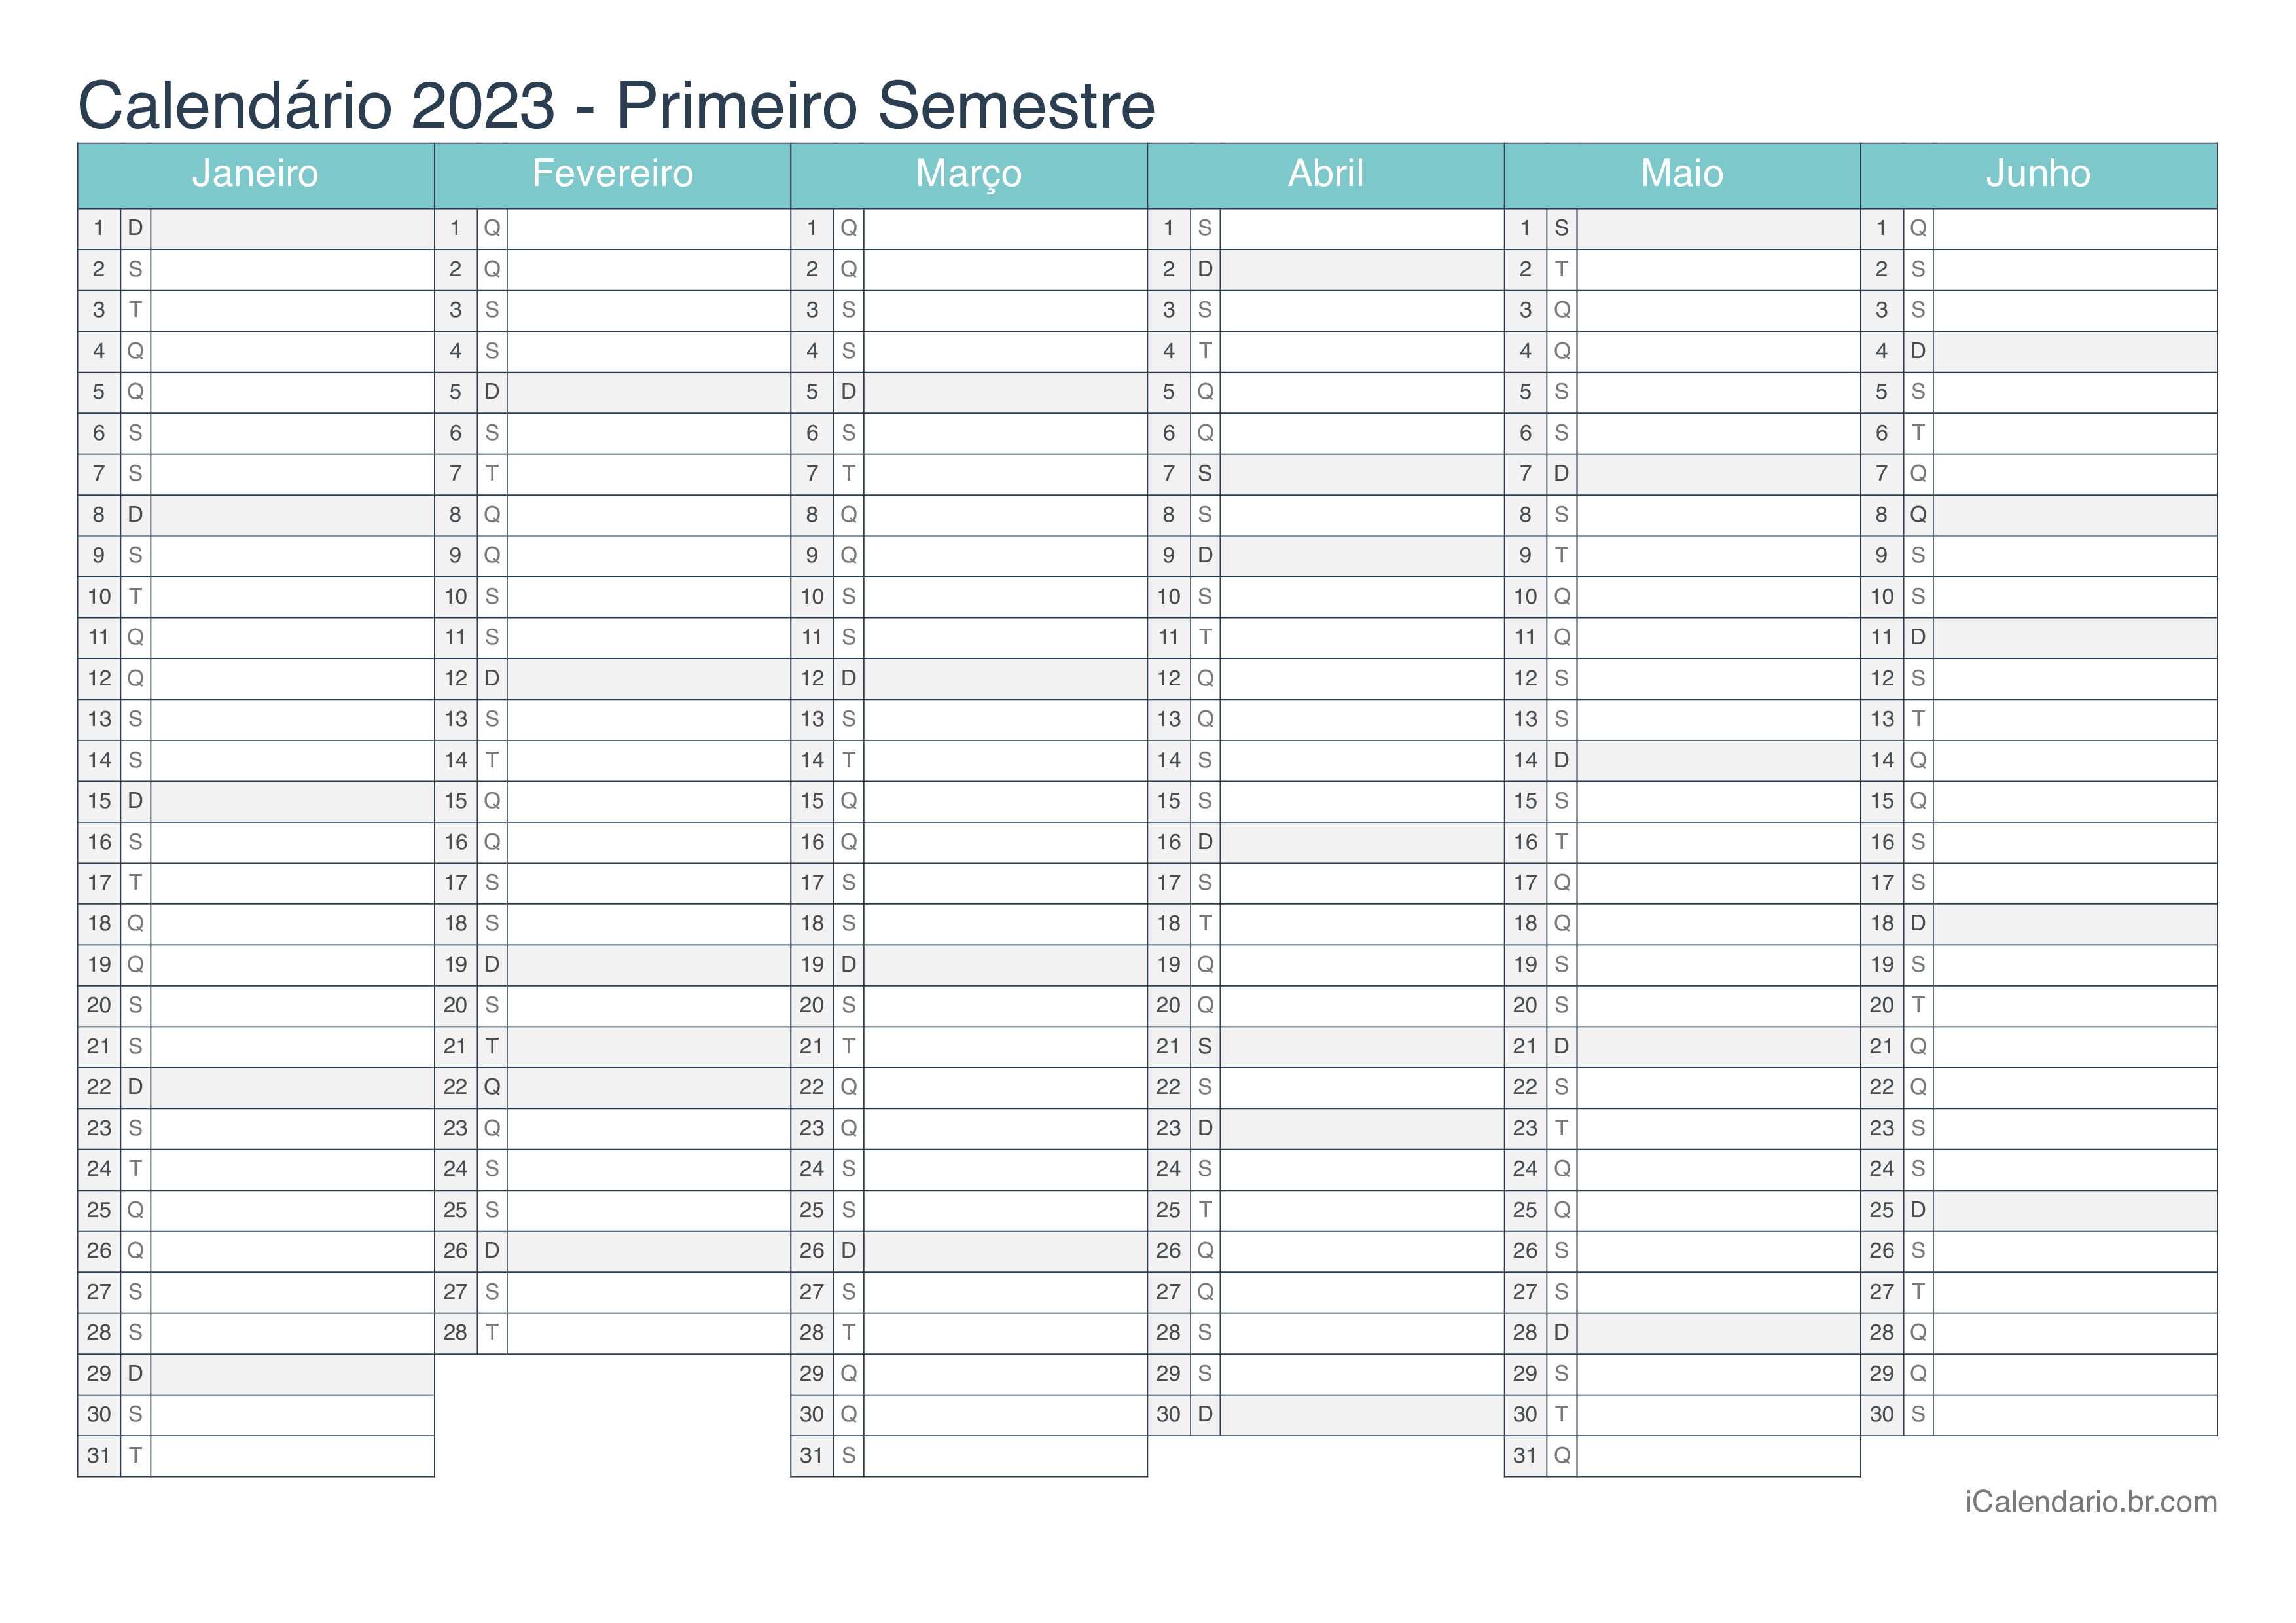 Calendário por semestre 2023 - Turquesa